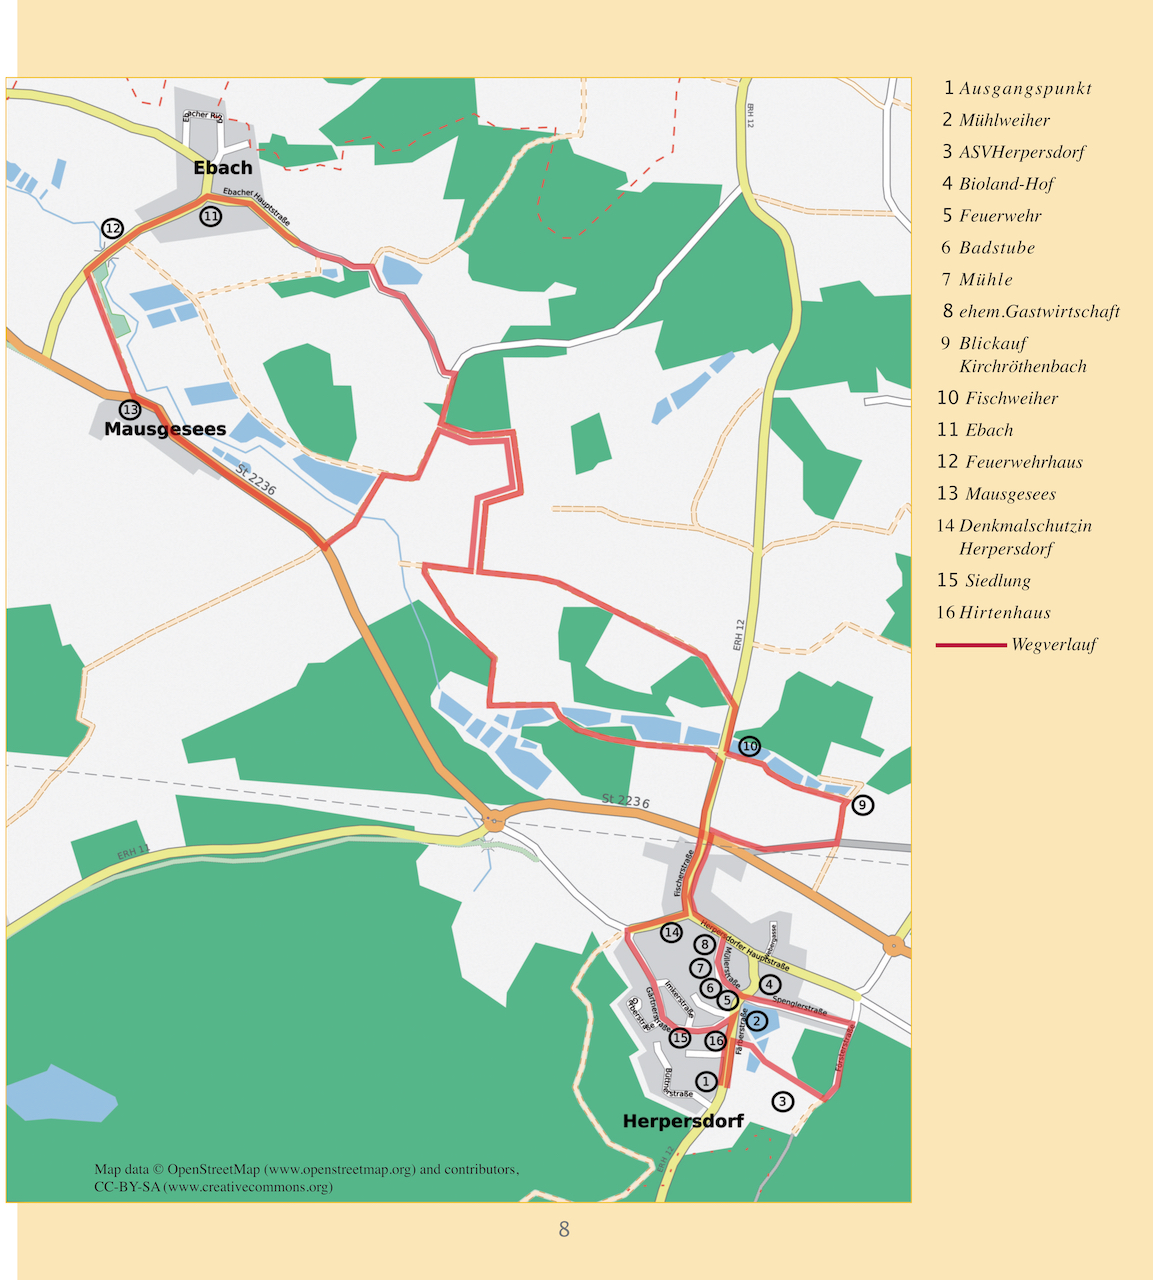 Karte mit dem Spaziergang durch Herpersdorf, Ebach und Mausgesees 